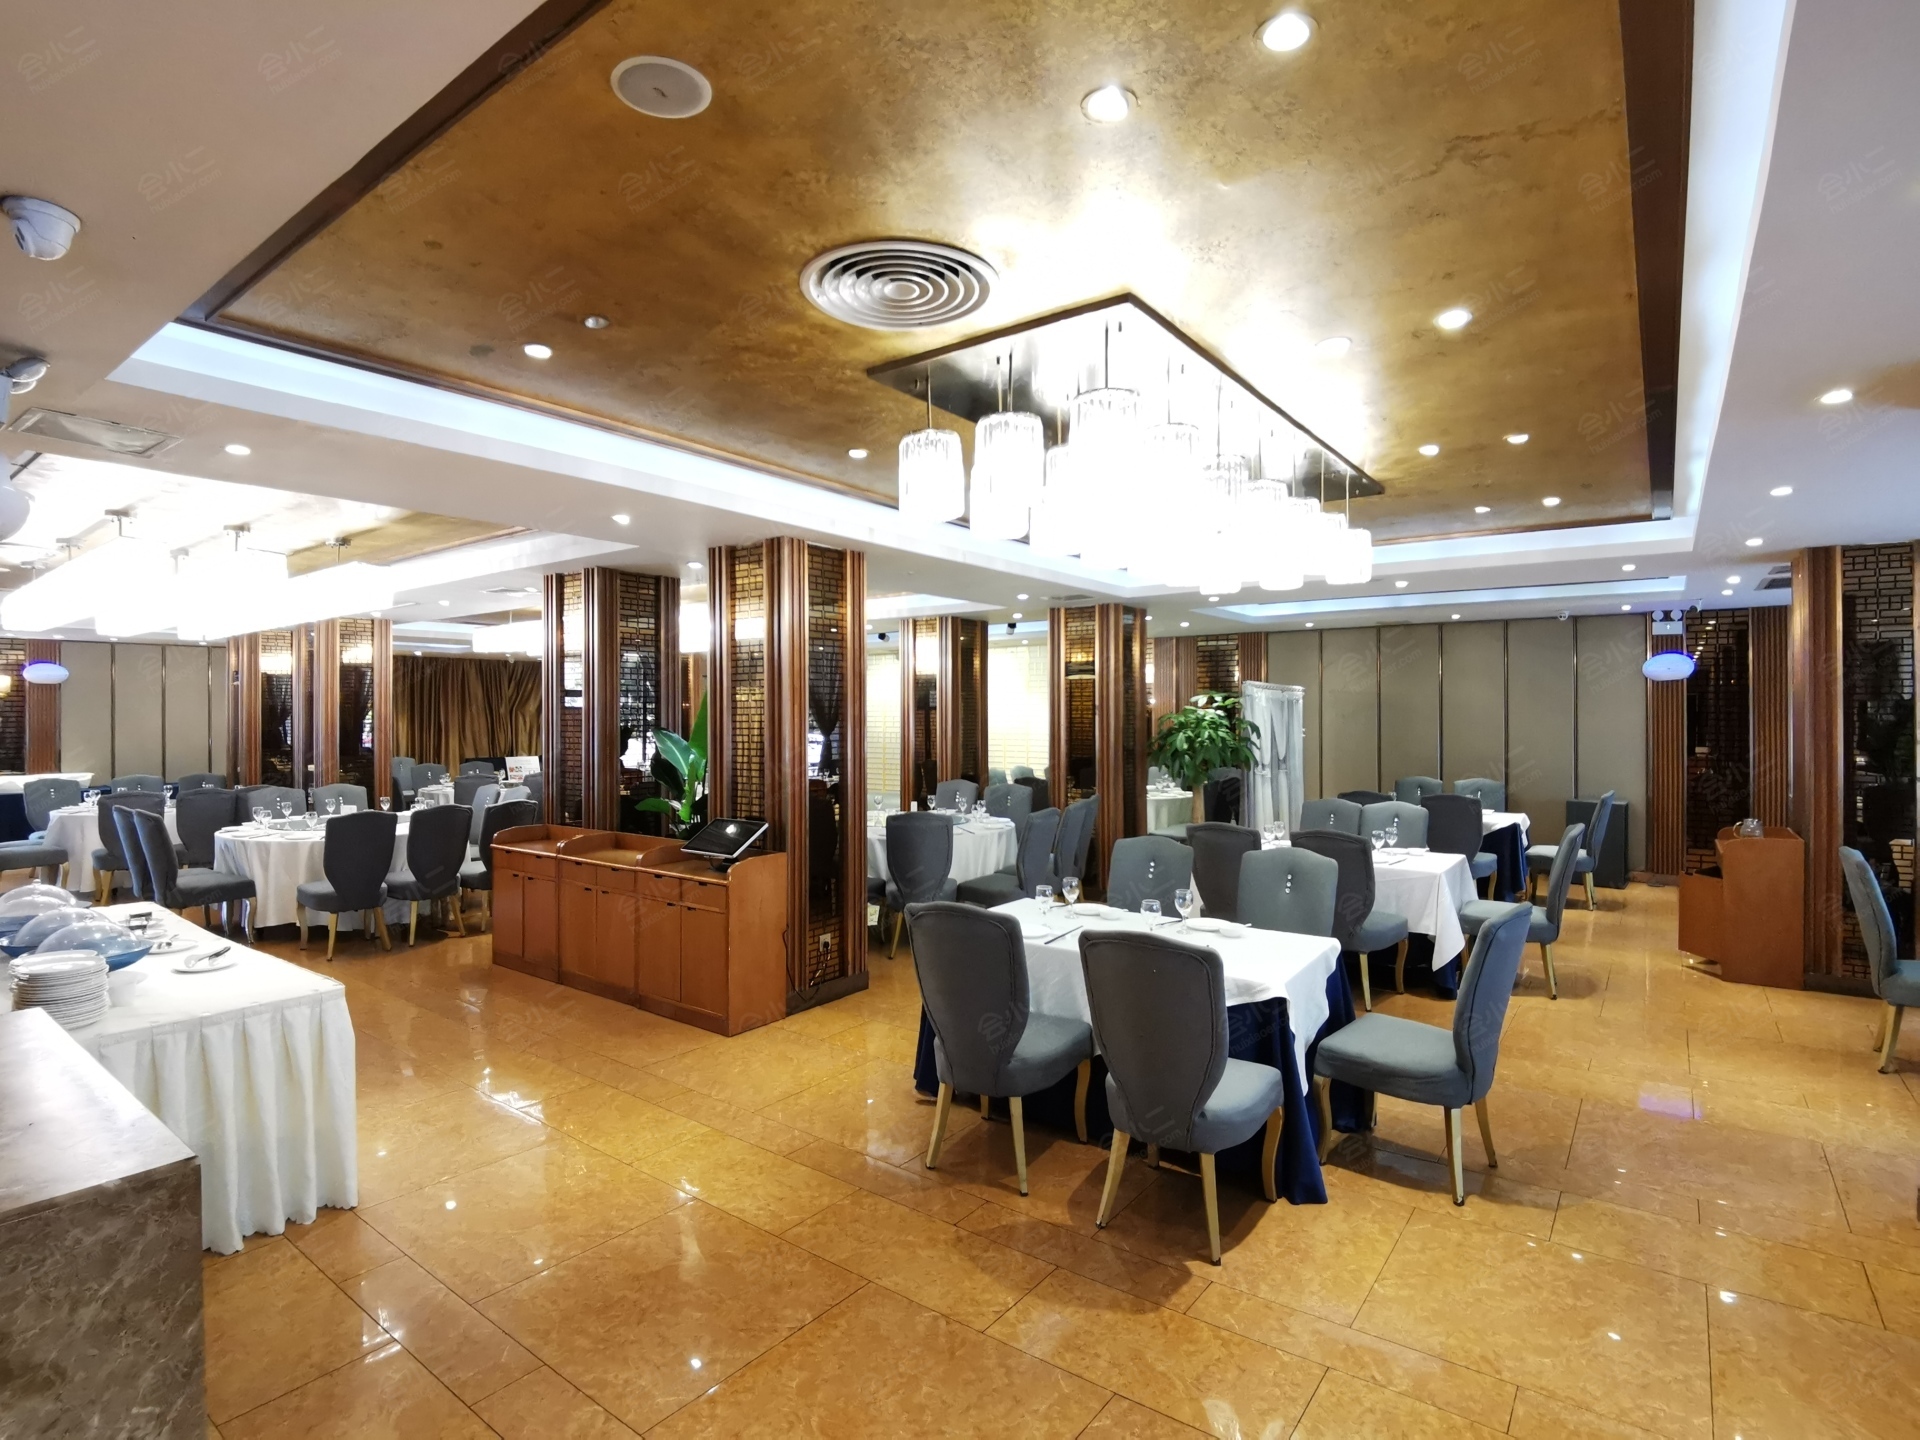 会议酒店 成都蓉城四季酒店查看相册鼎食餐厅 面积250m/席位120/位于1